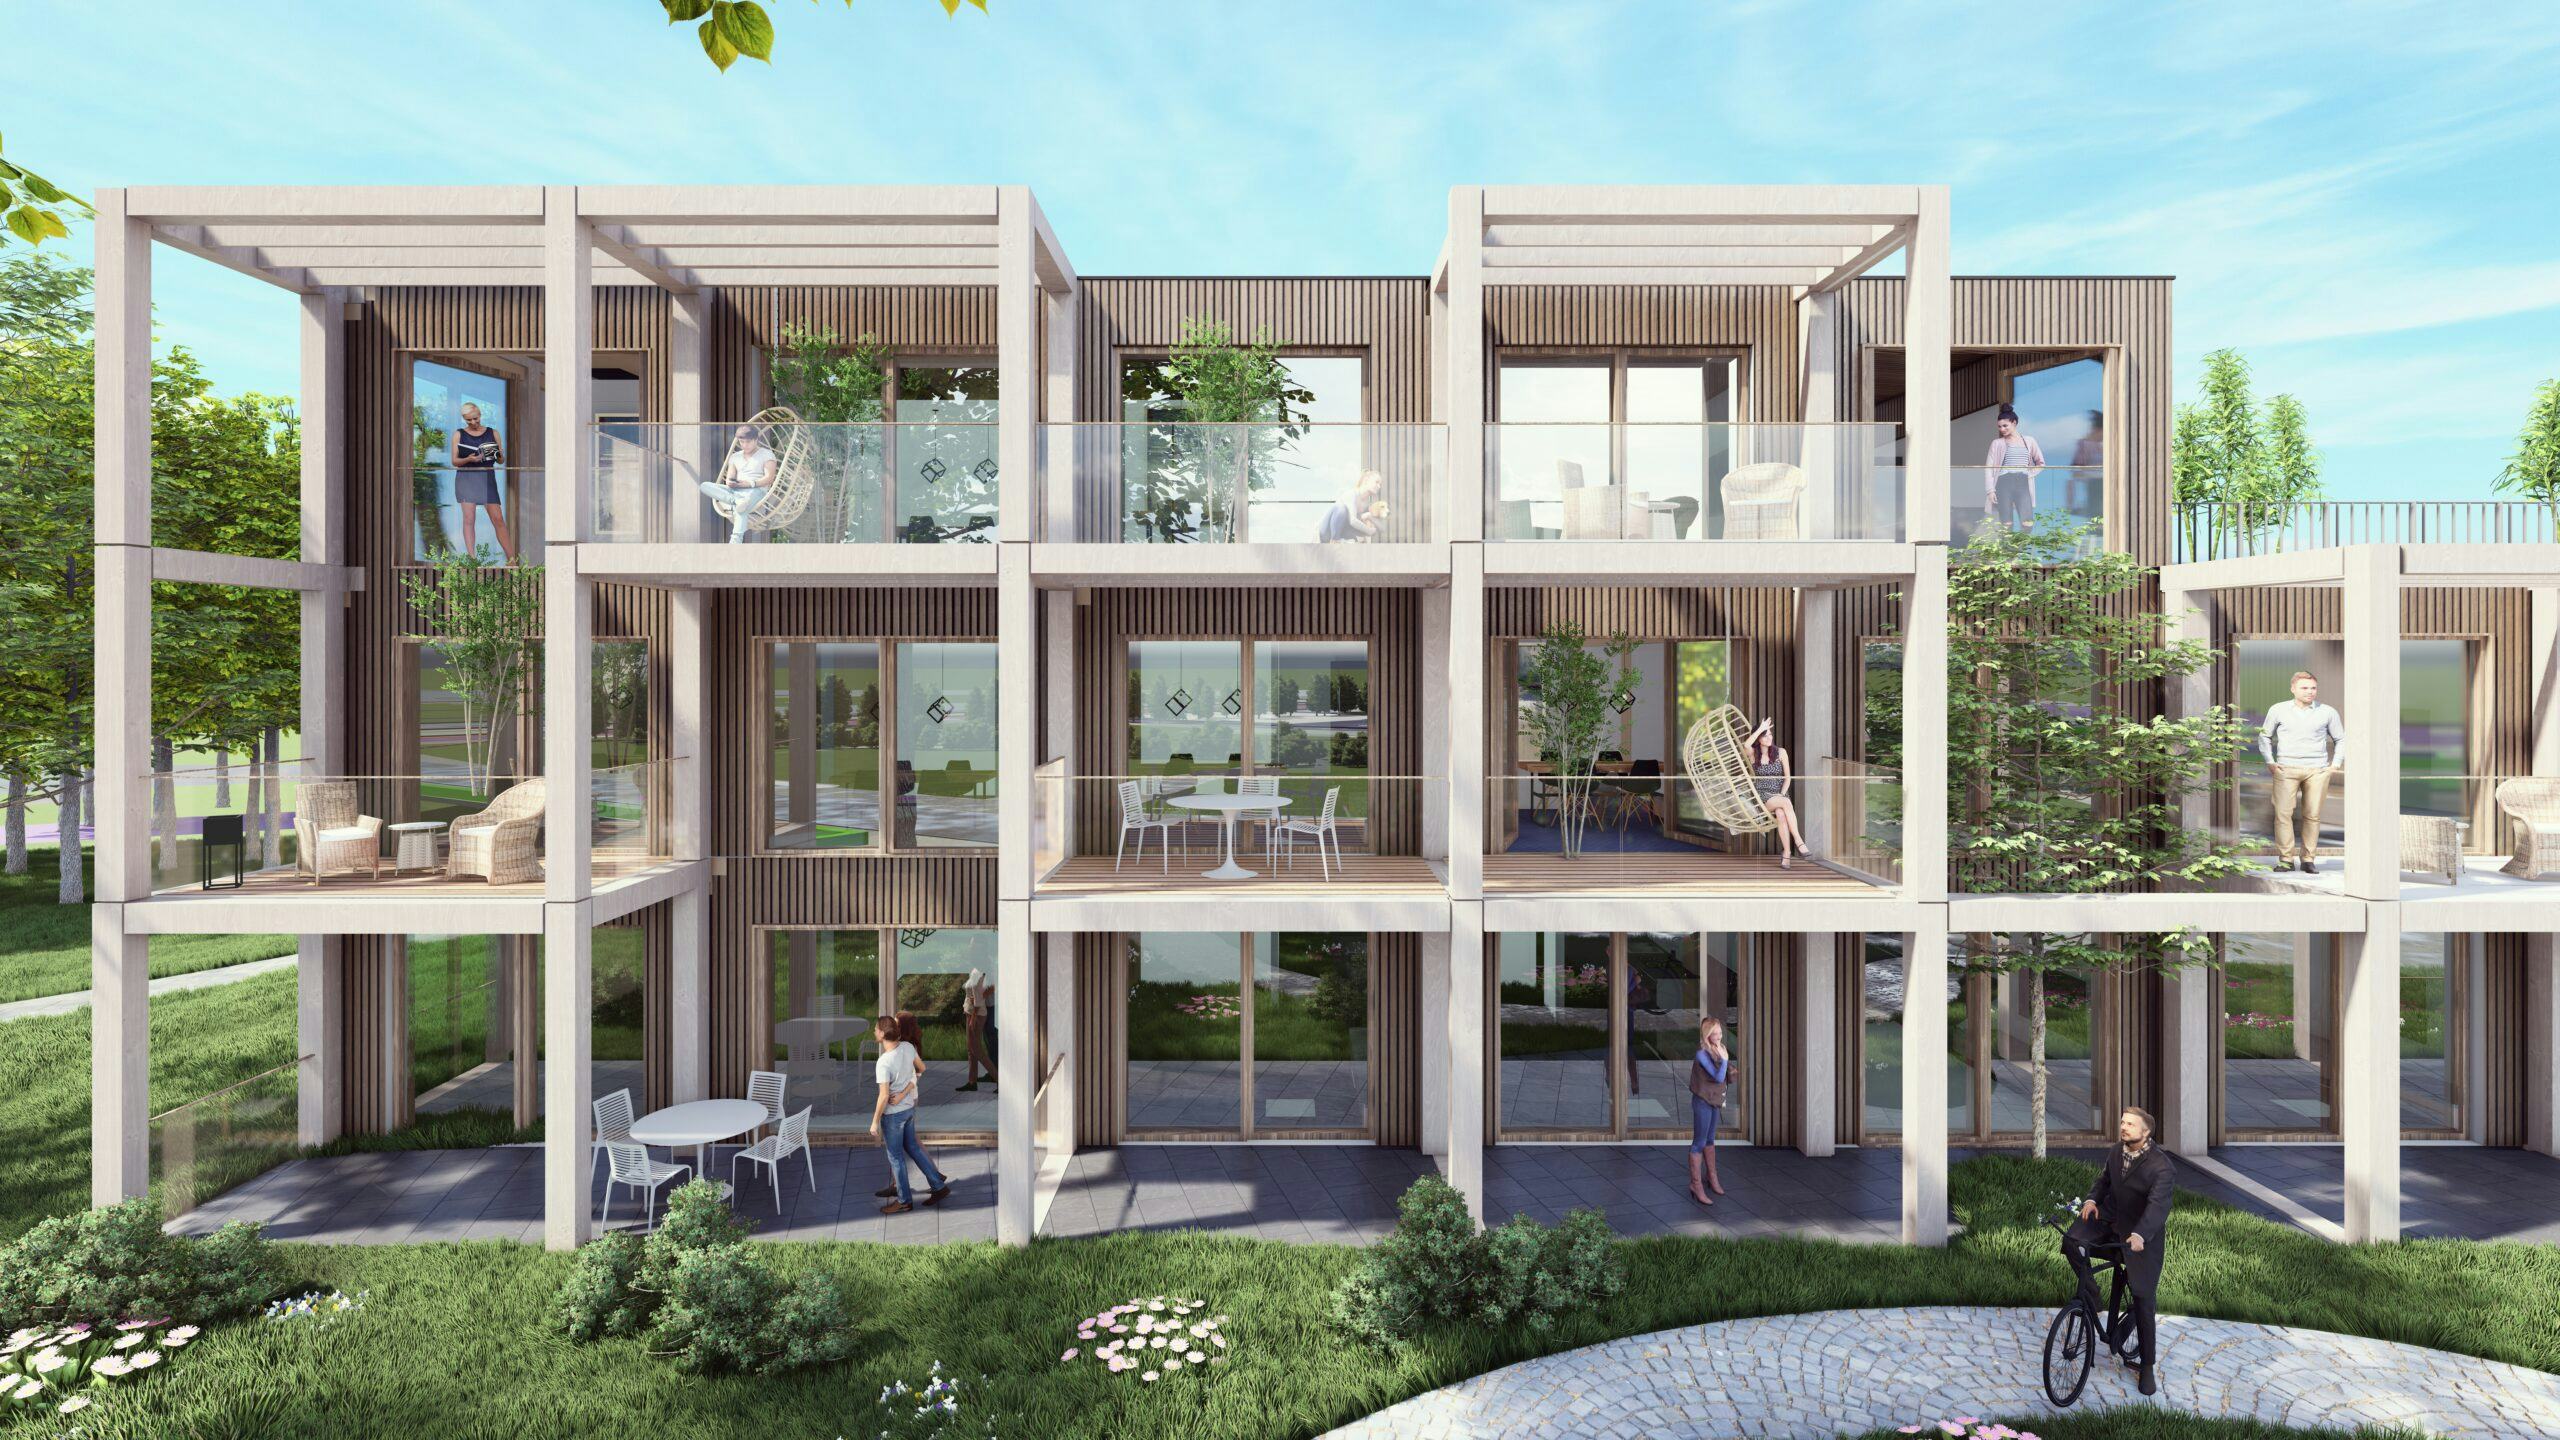 Artist impression van appartementen gebouwd met het
Circle-betoncasco. Beeld: Archikon